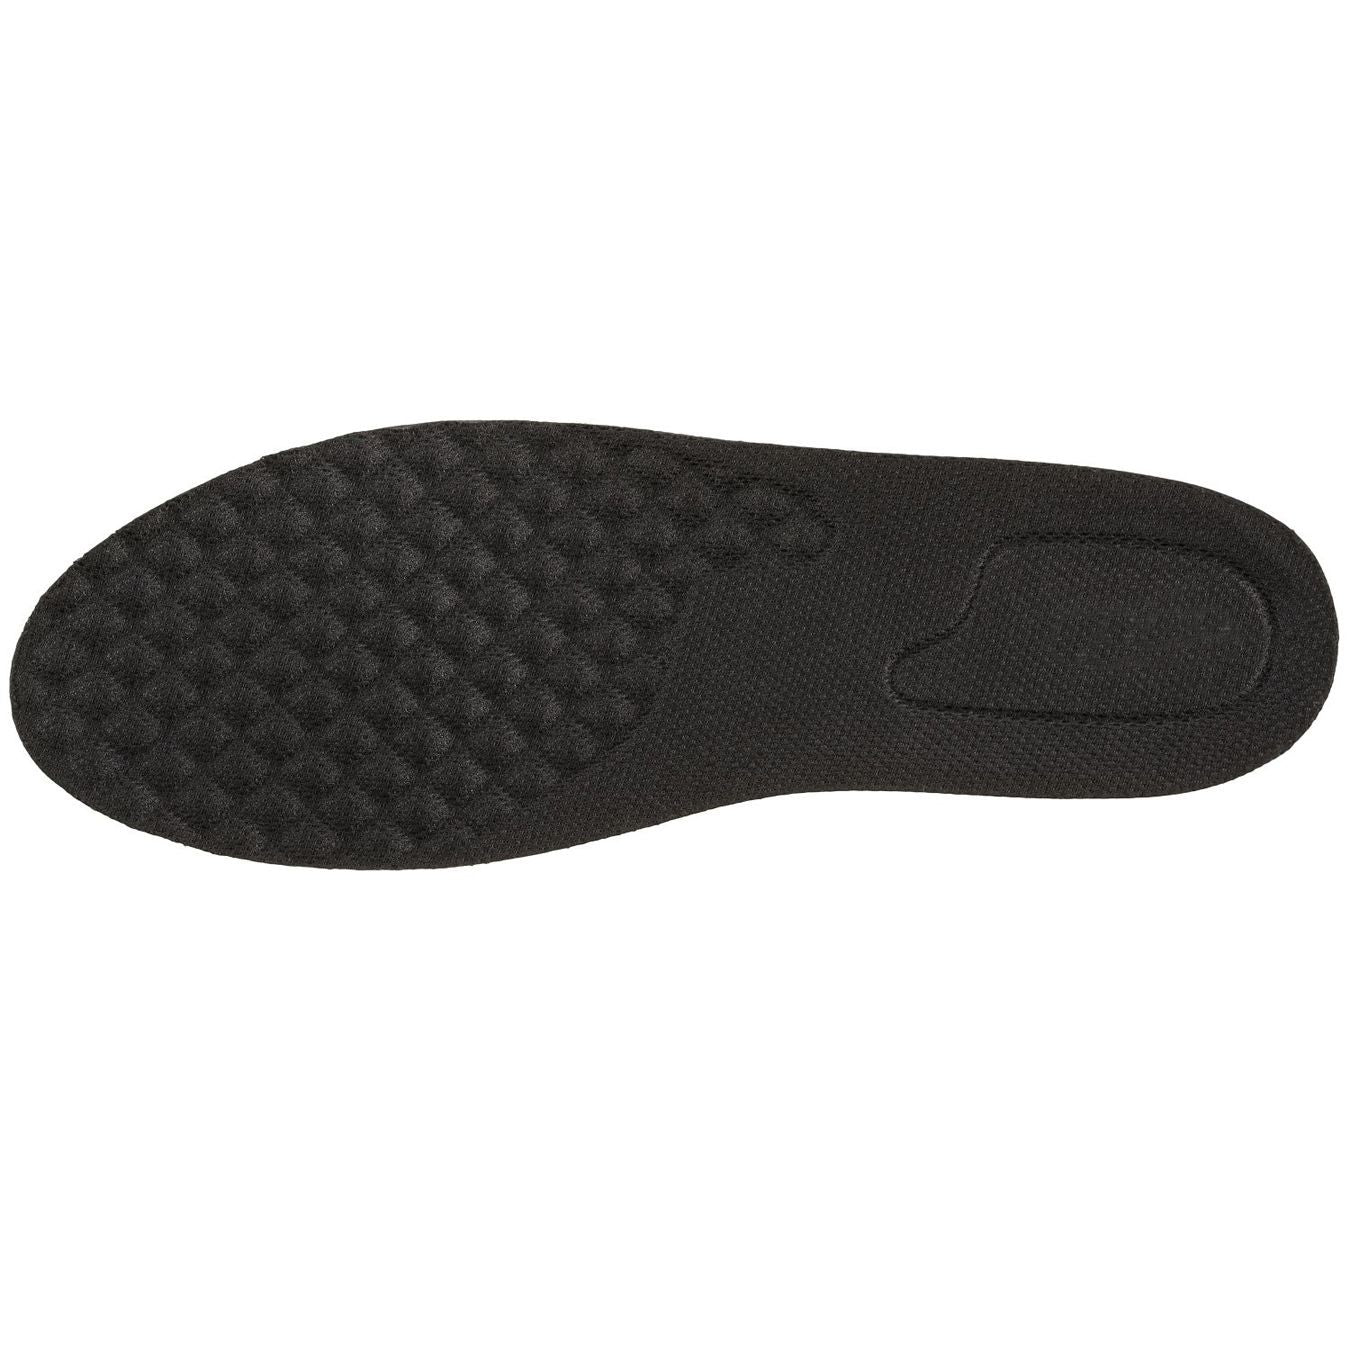 Detachable Shoe Heel Lift Inserts TallMenShoes.com – Tallmenshoes.com